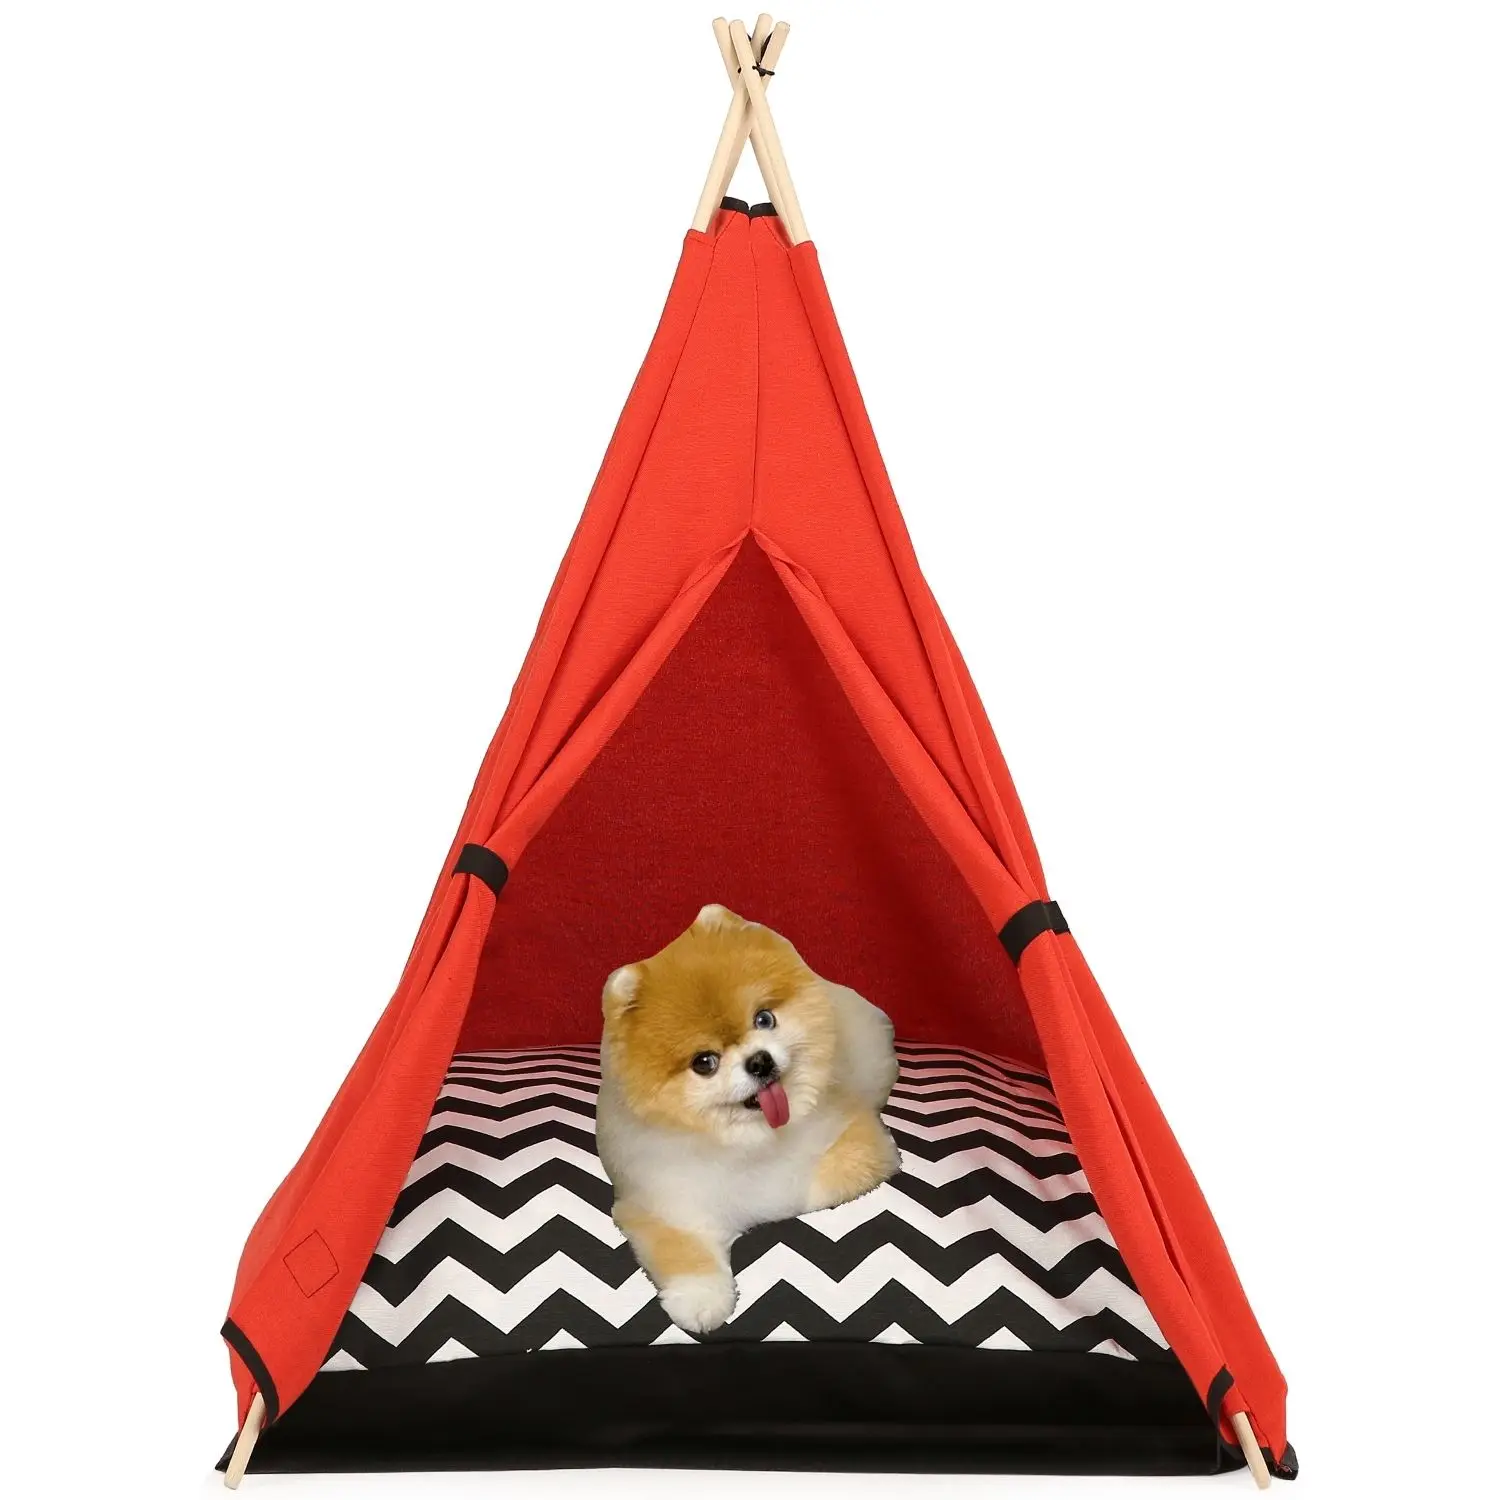 

Pet Палатка Домик кошка пижамы для малыша, собачья кровать переносной вигвам с моющимся зигзаг Толстая Подушка для собаки щенка экскурсия дл...